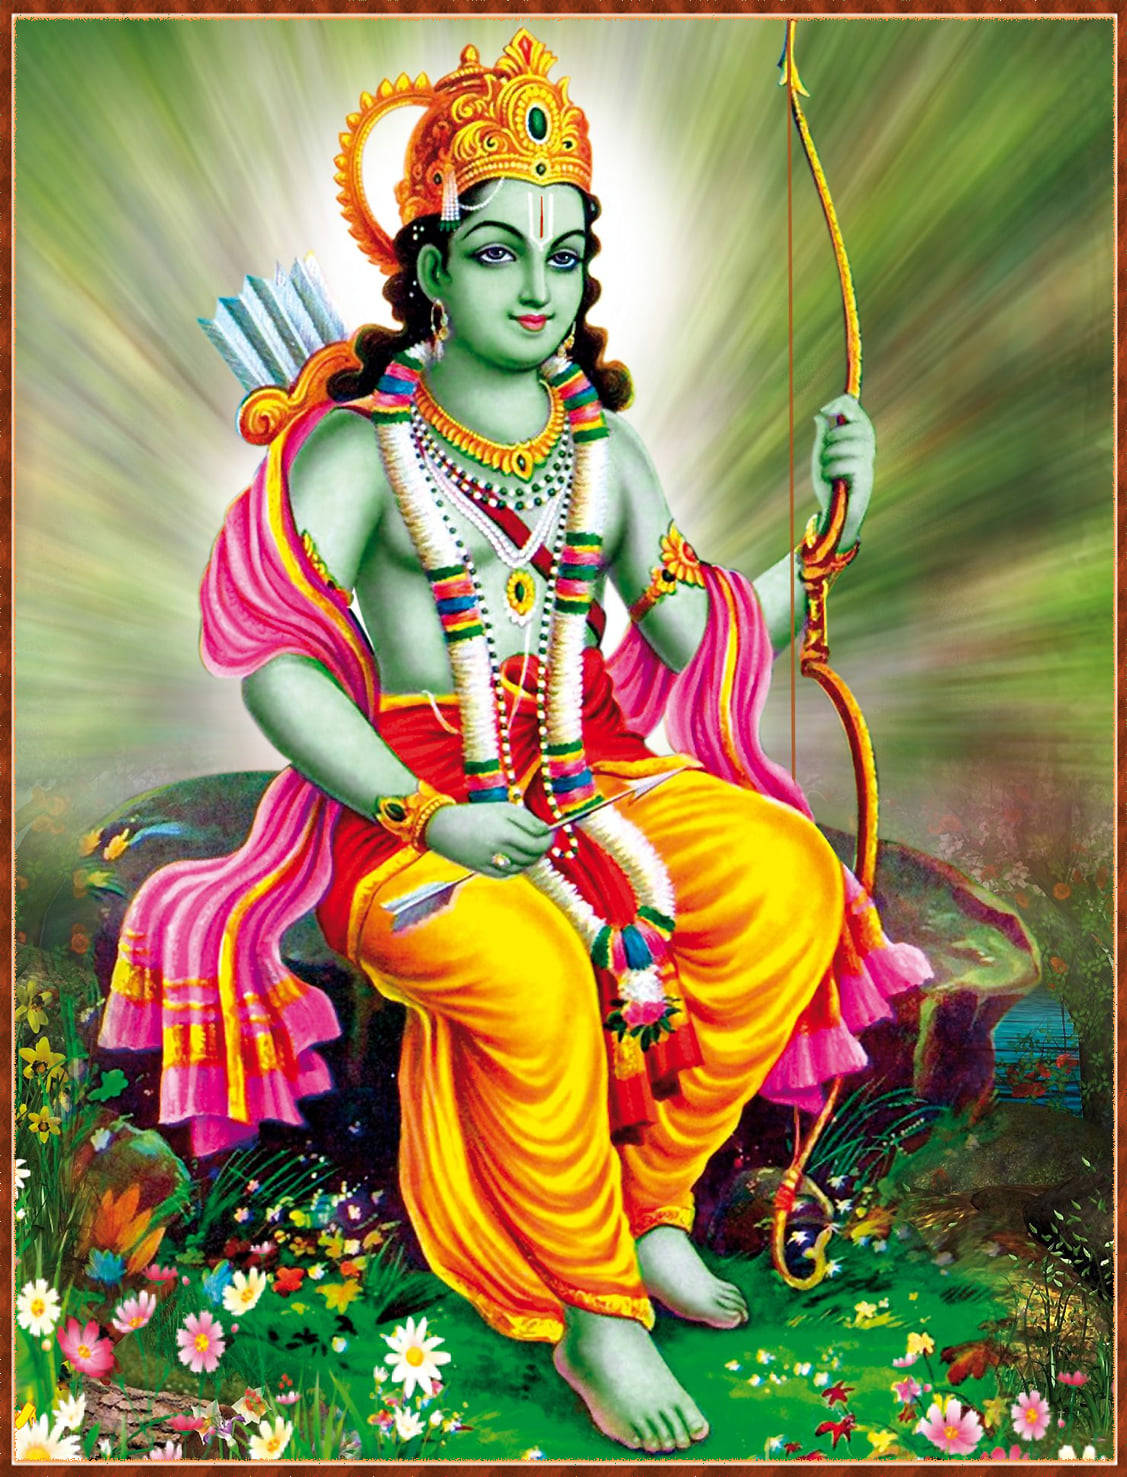 Free Lord Krishna 3D Wallpaper Downloads, Lord Krishna 3D Wallpaper for FREE